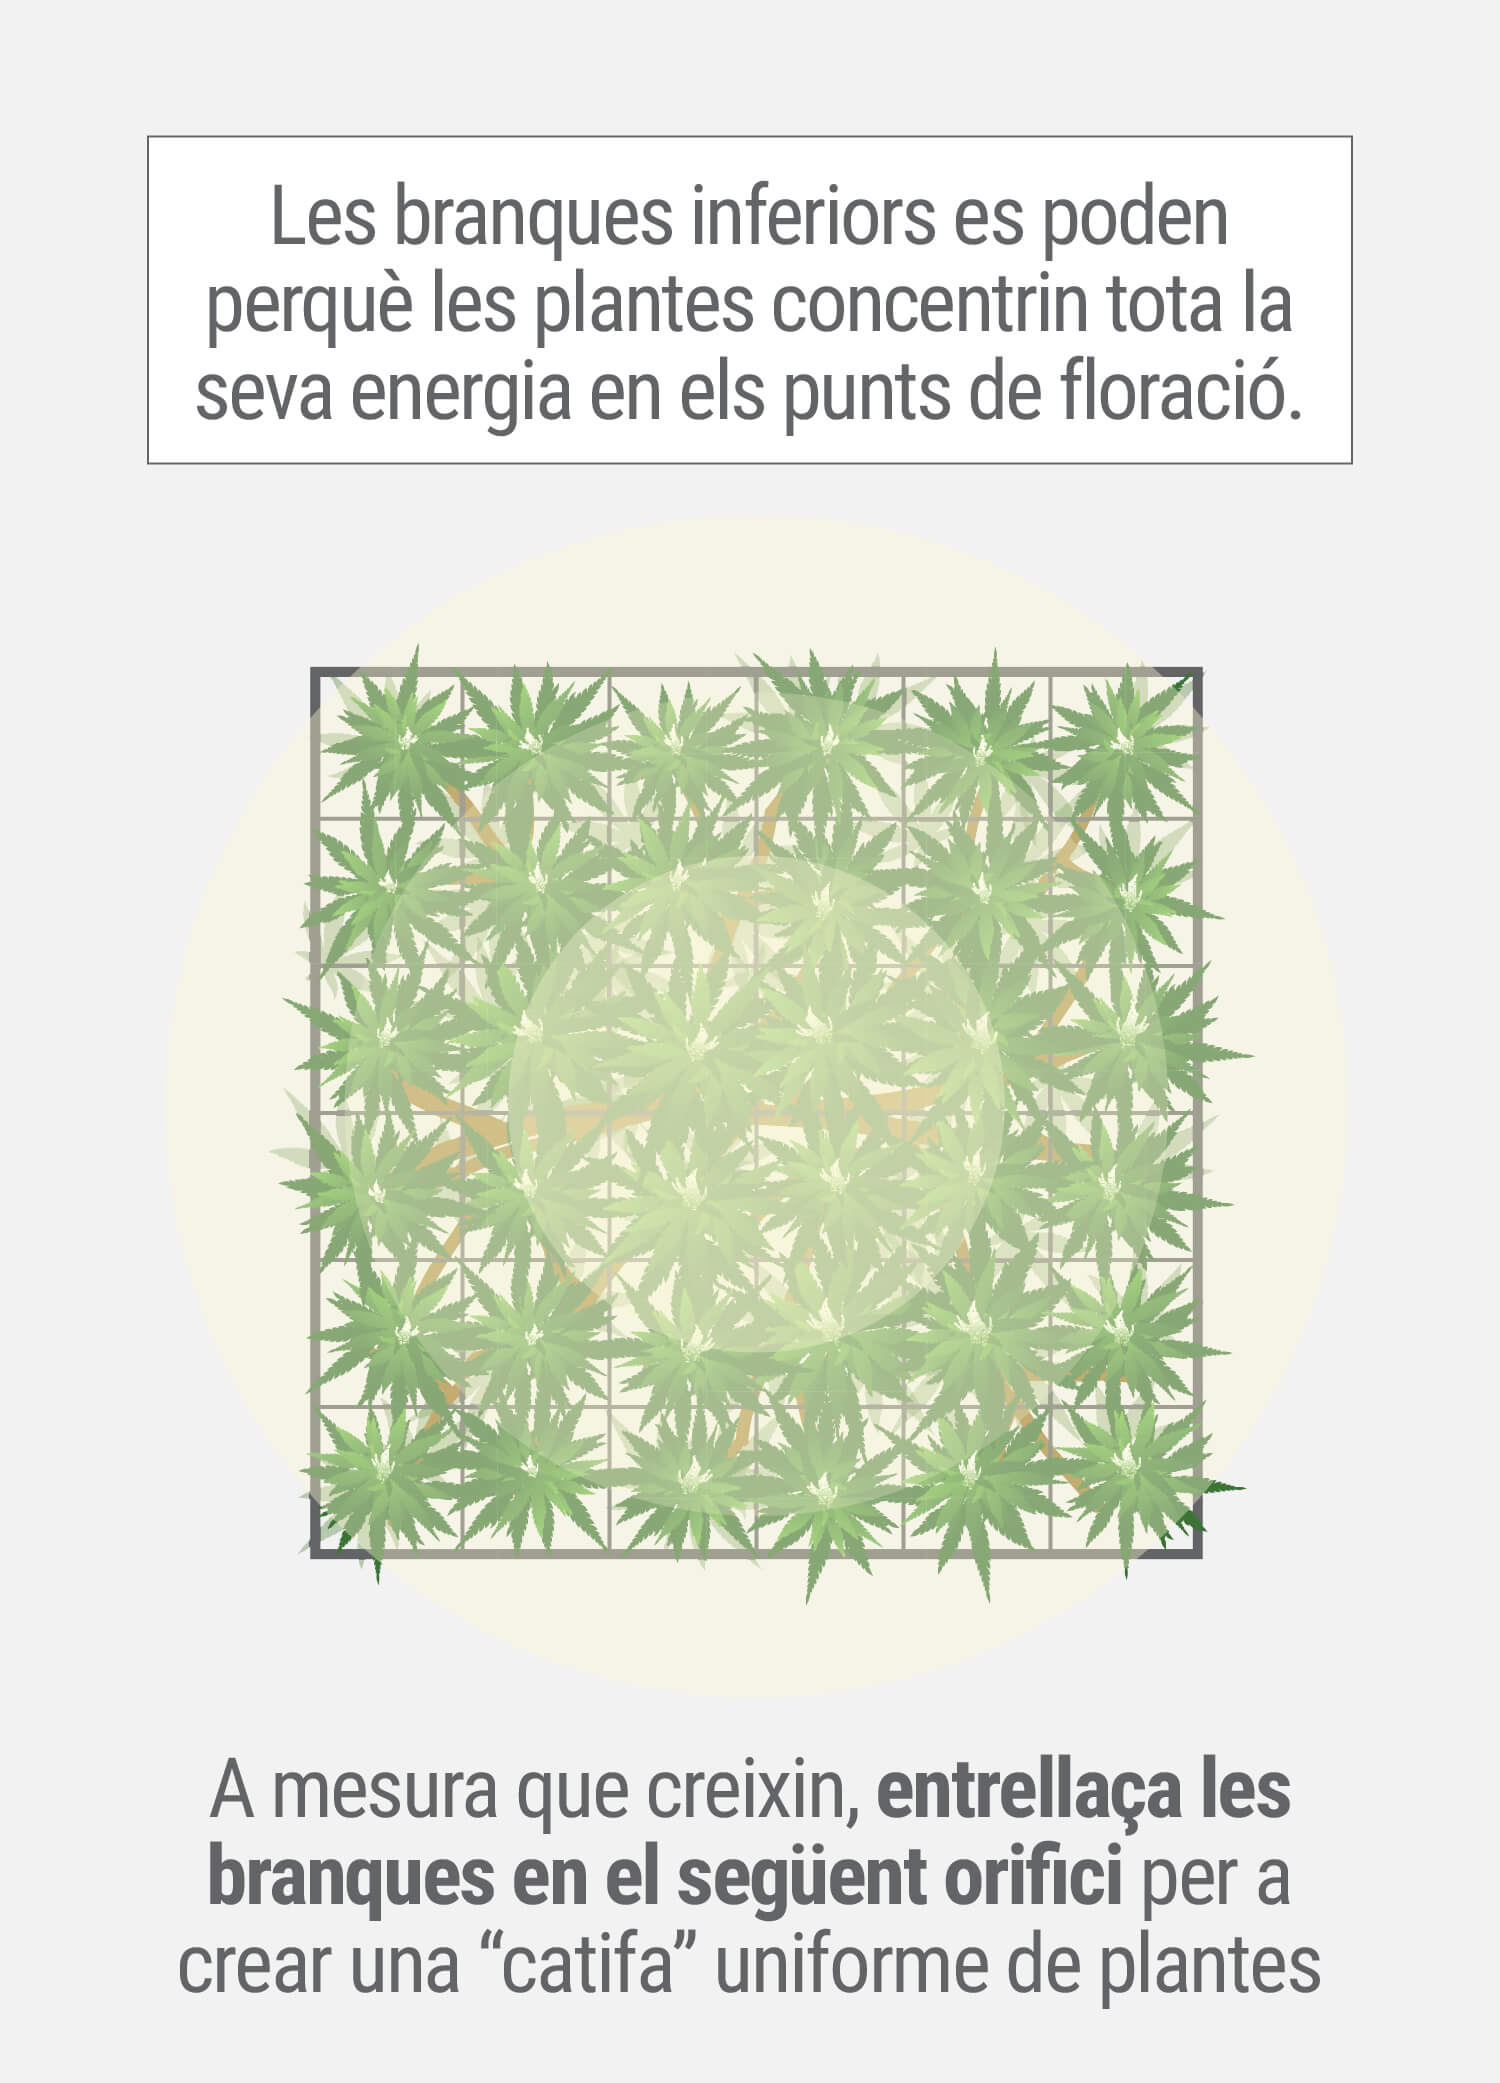 Cultivant cannabis amb el mètode SCROG (Screen of Green) Tercera Fase